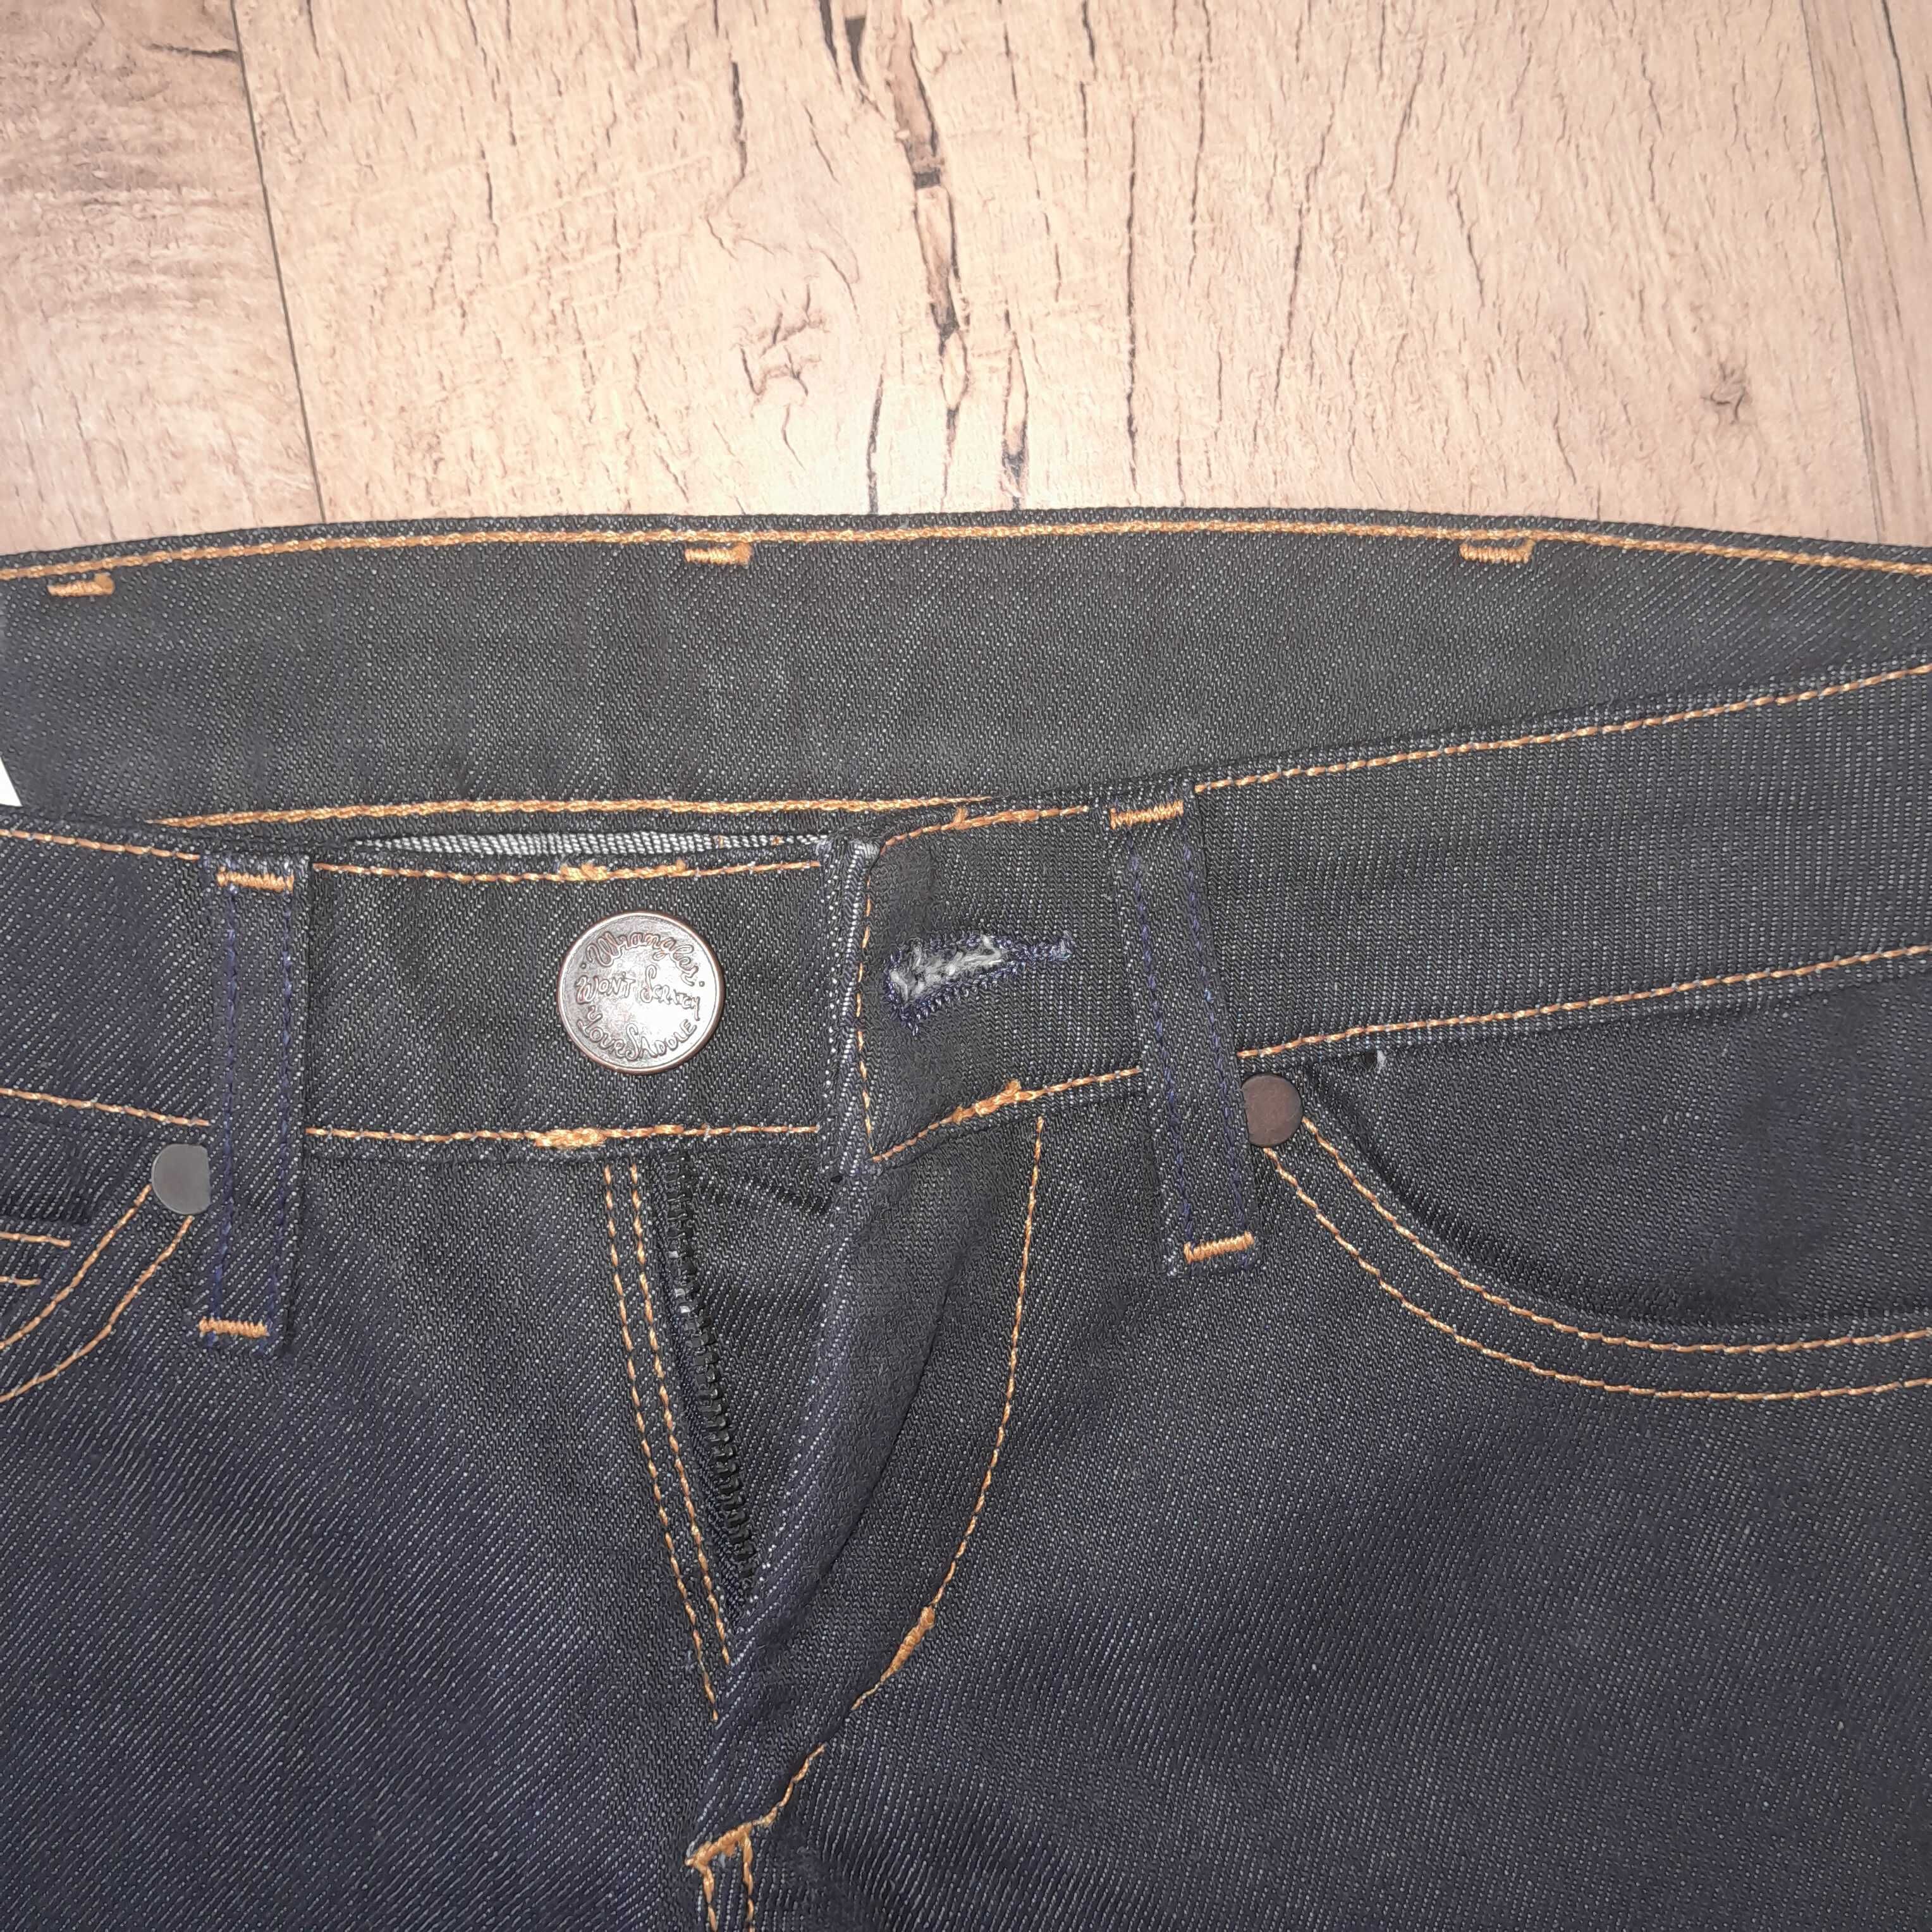 Granatowe spodnie jeansowe Wrangler Lia 25/32 XS nowe